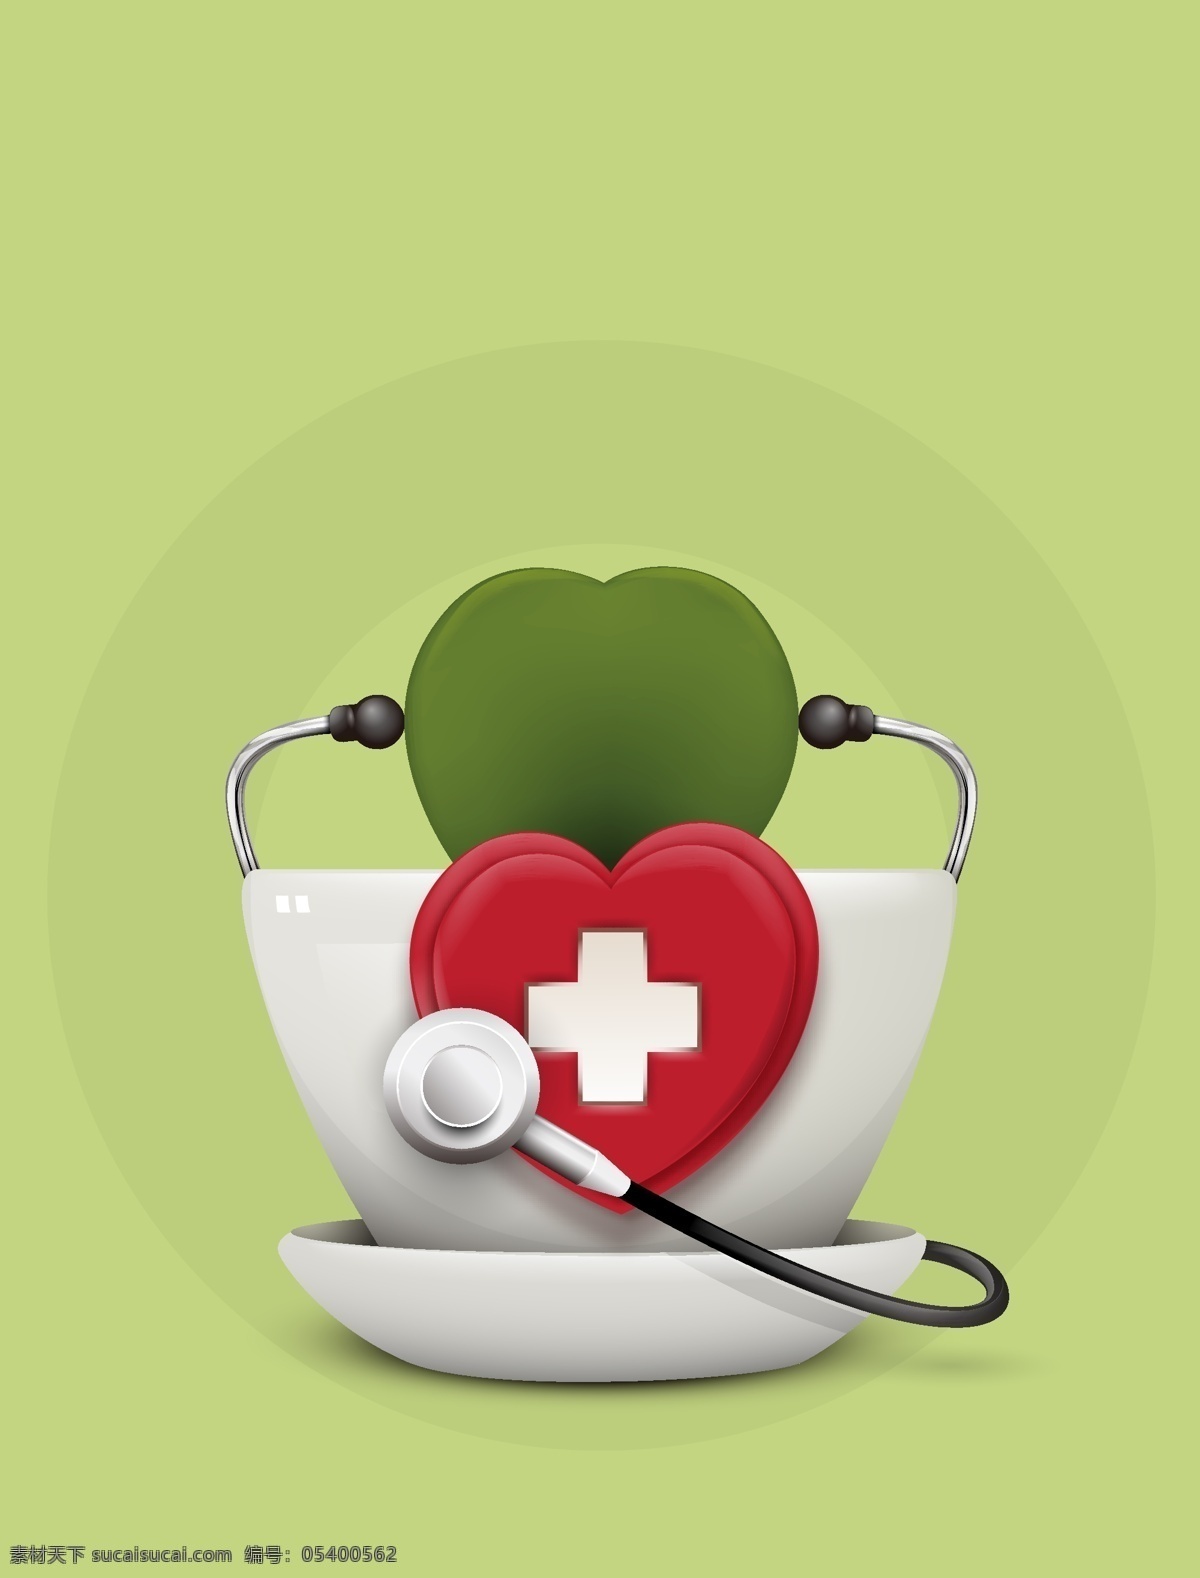 矢量 医疗 健康 医院 急救 背景 绿色 创意 红十字 救护 听诊器 海报